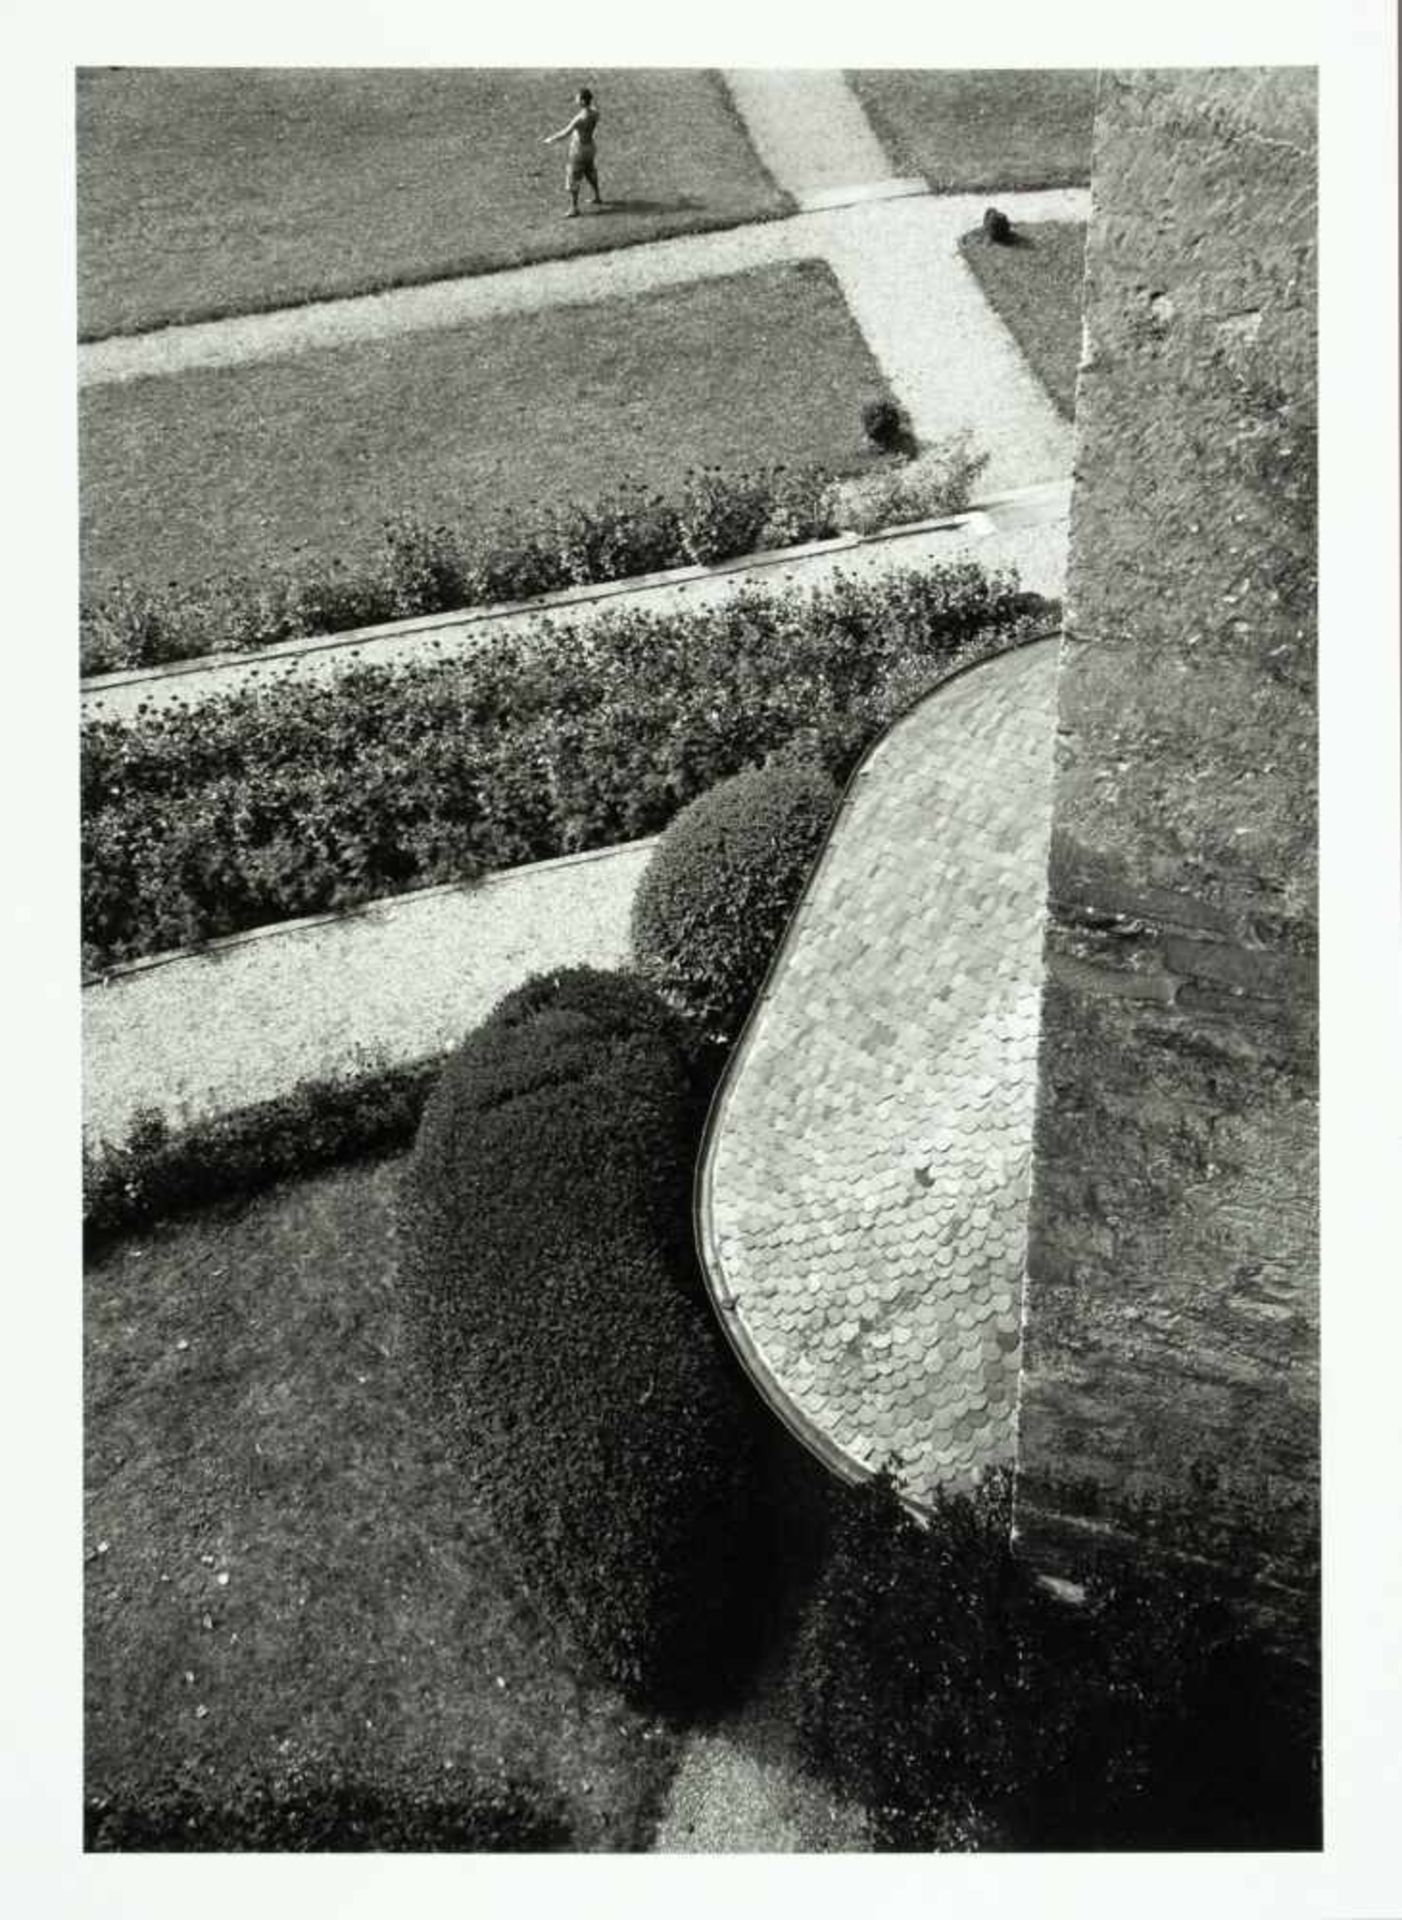 László Moholy-Nagy. Sechs Fotografien. Silbergelatine. 1928-1930/1994. 29 : 20 cm (40 : 30 cm).